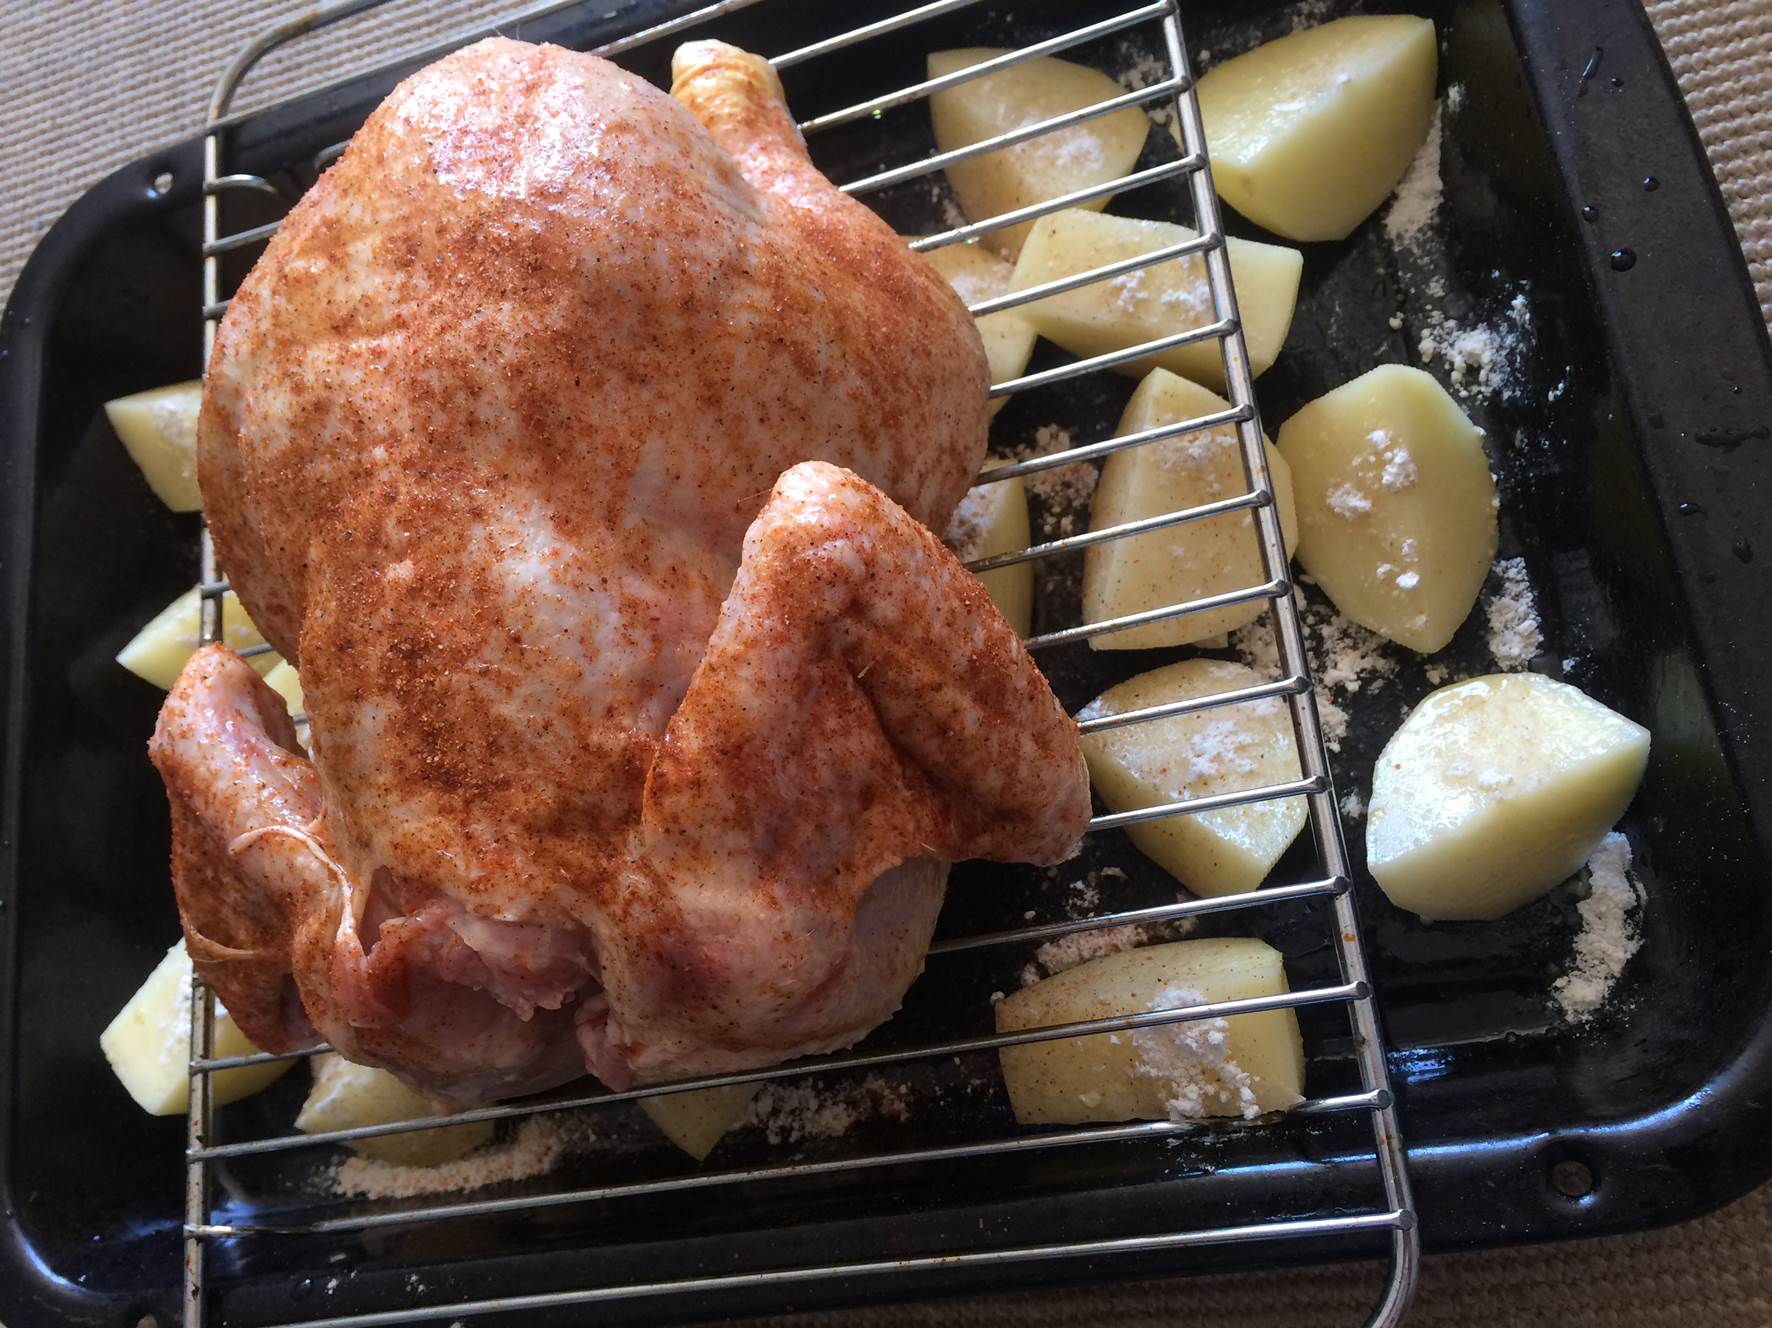 prepared roast chicken